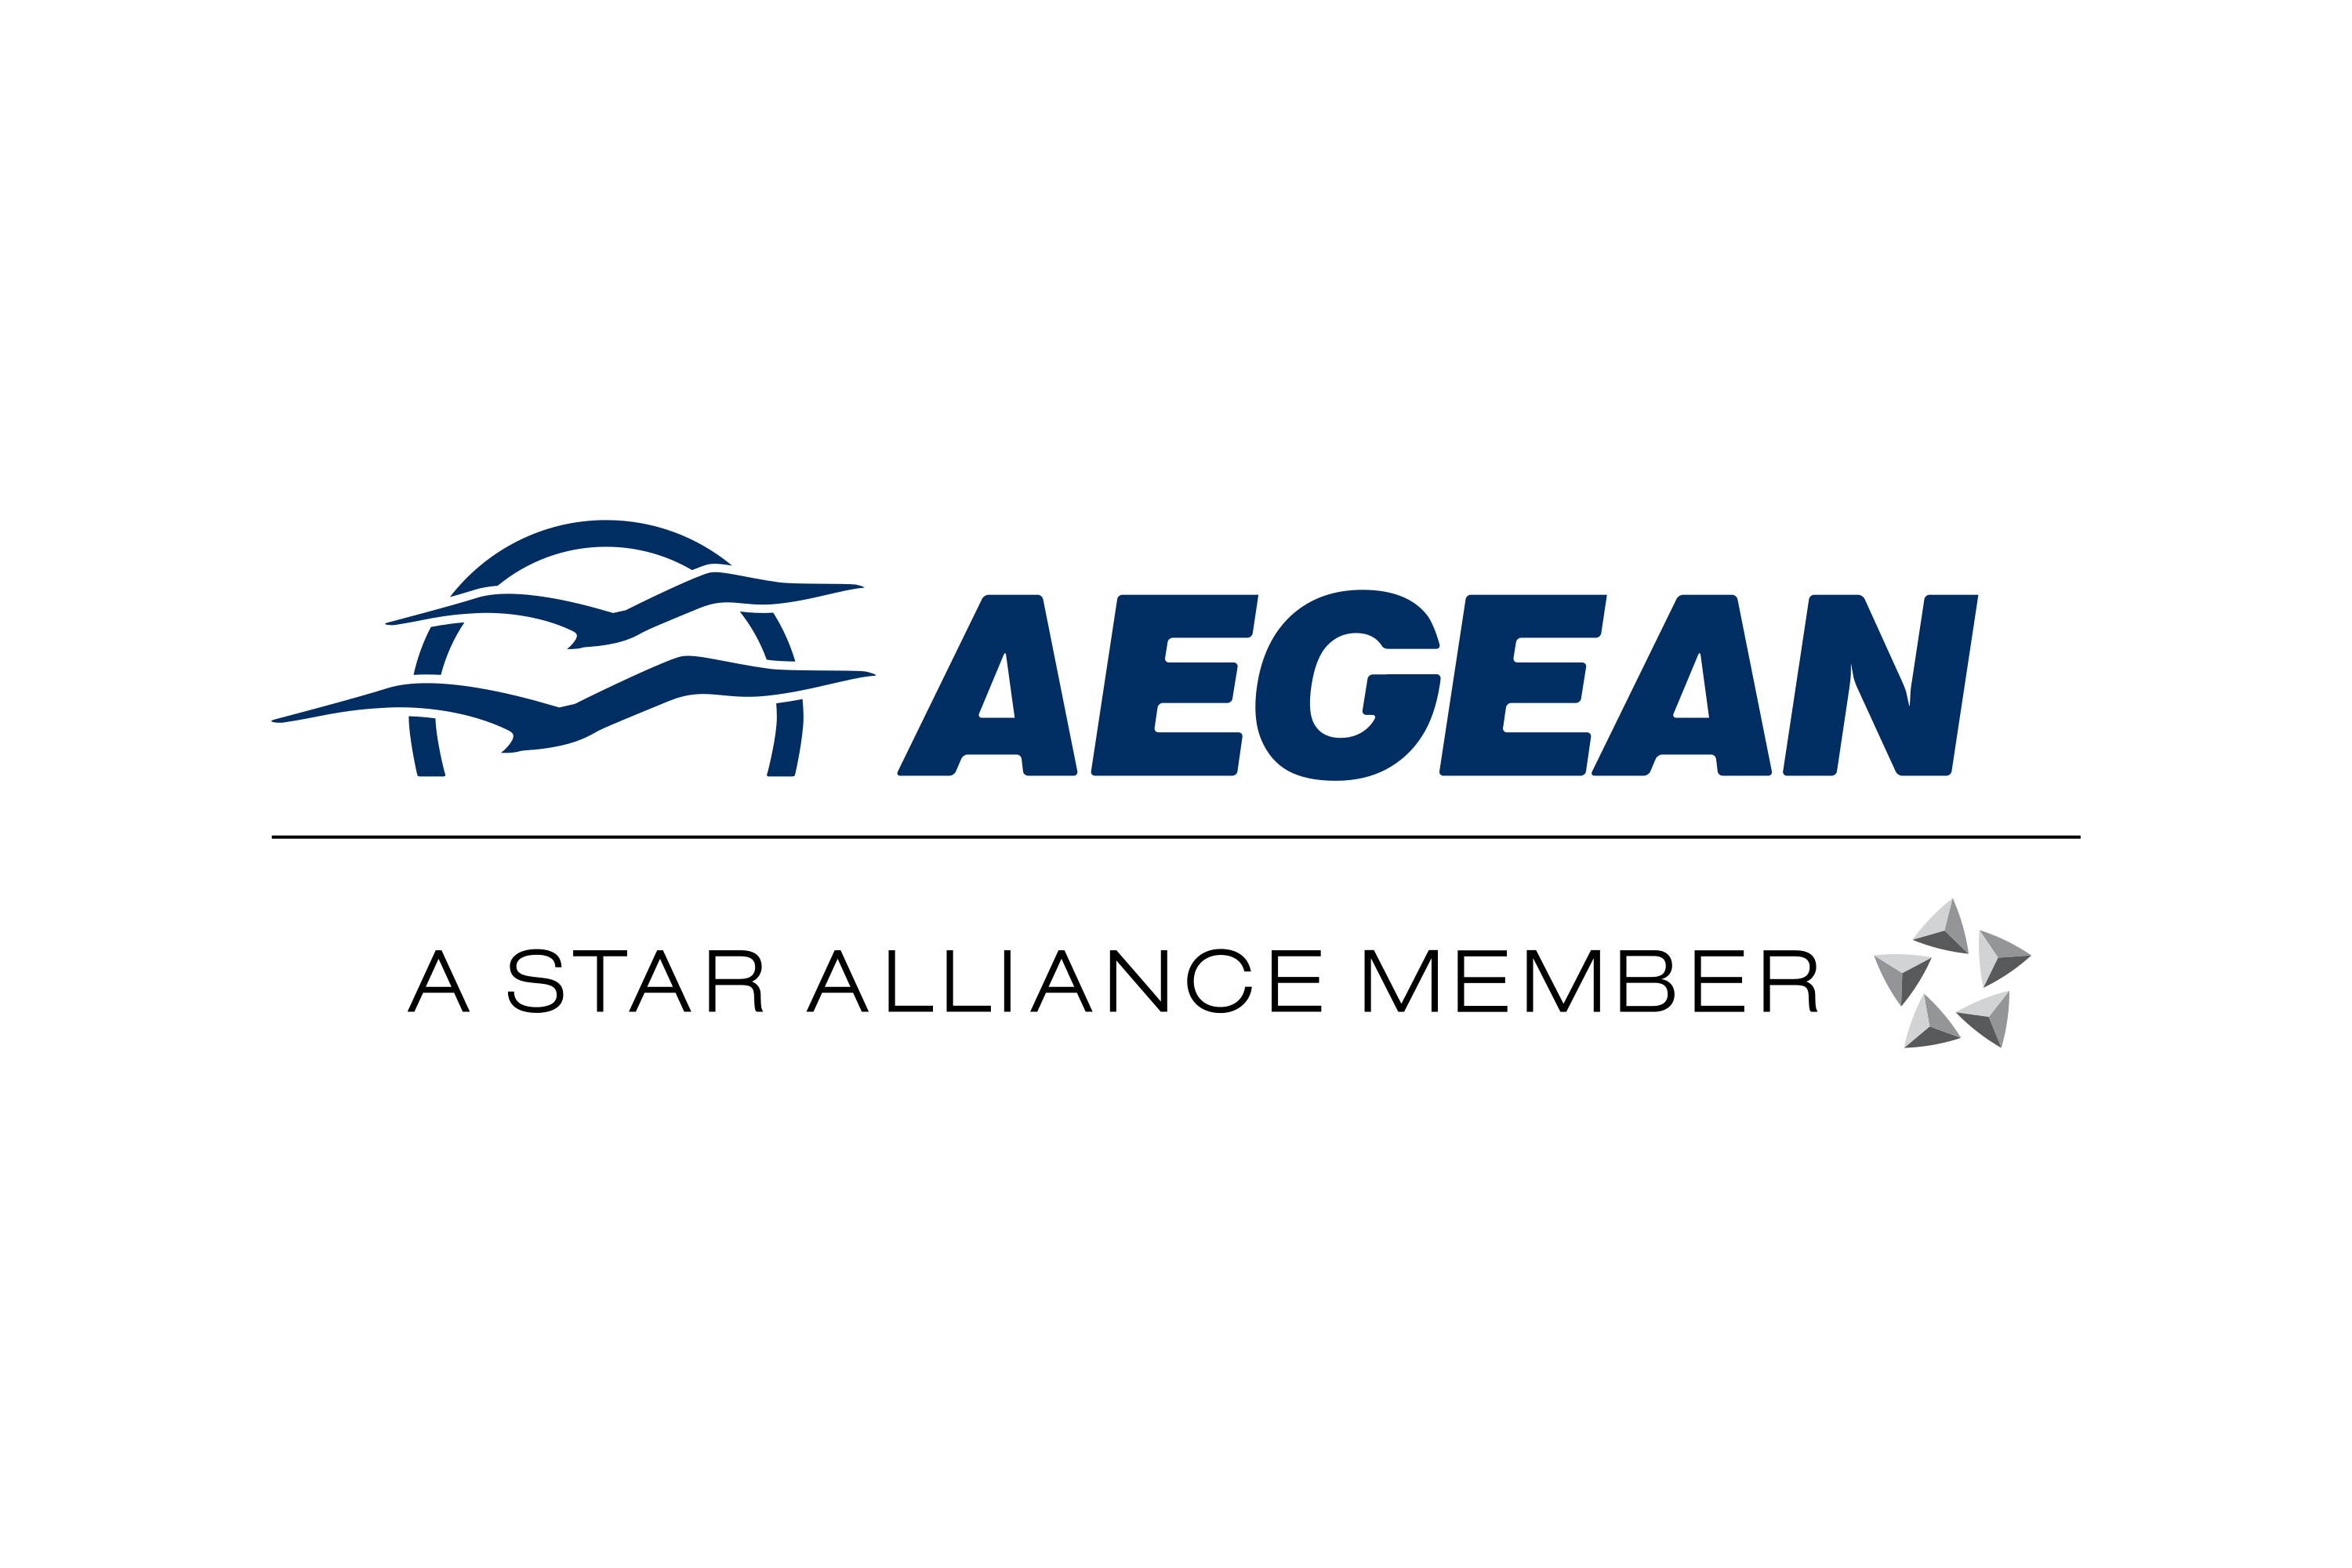 Греческие авиалинии aegean airlines: самолеты, маршруты, услуги